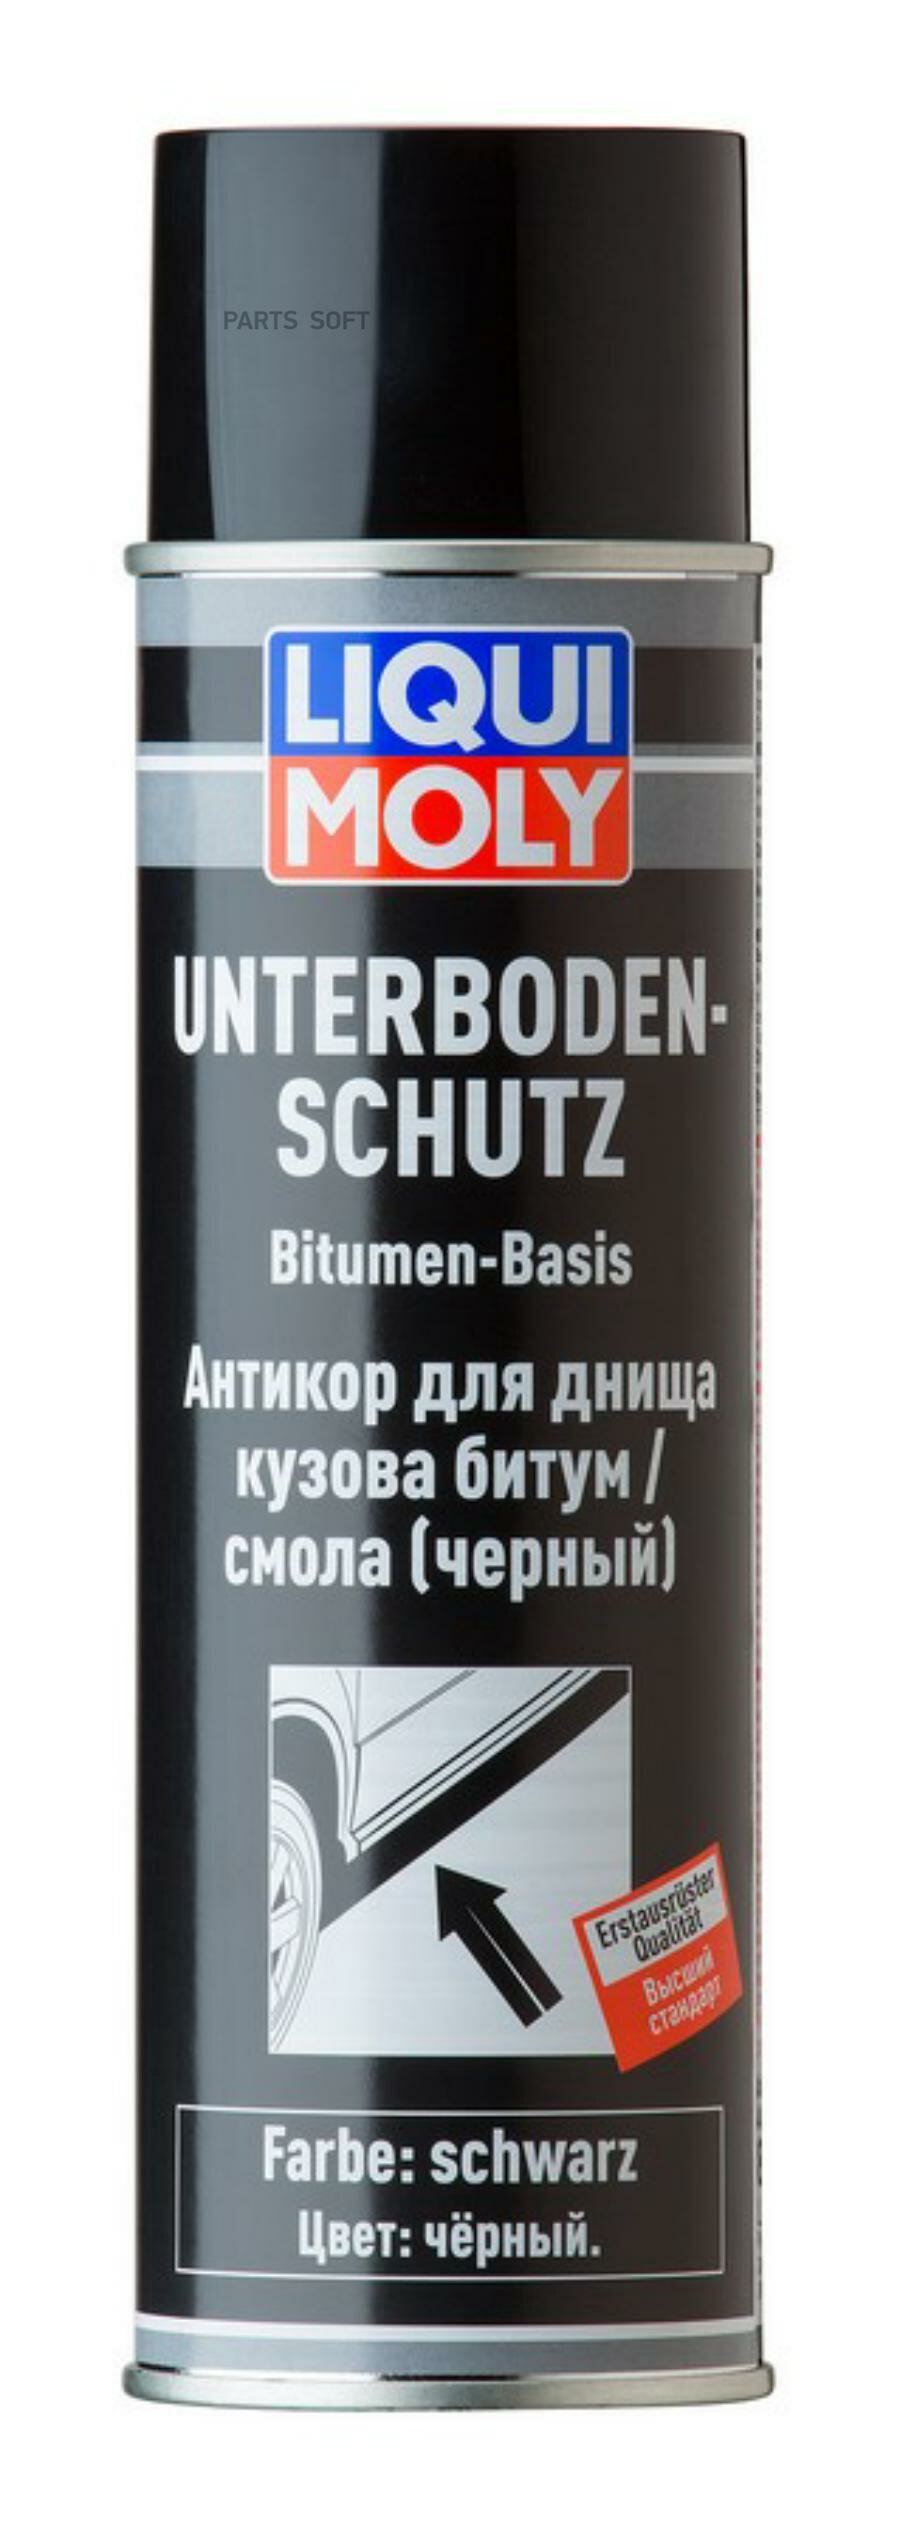 Антикор для днища кузова битум/смола (черный) (500ml) LIQUI MOLY / арт. 8056 - (1 шт)